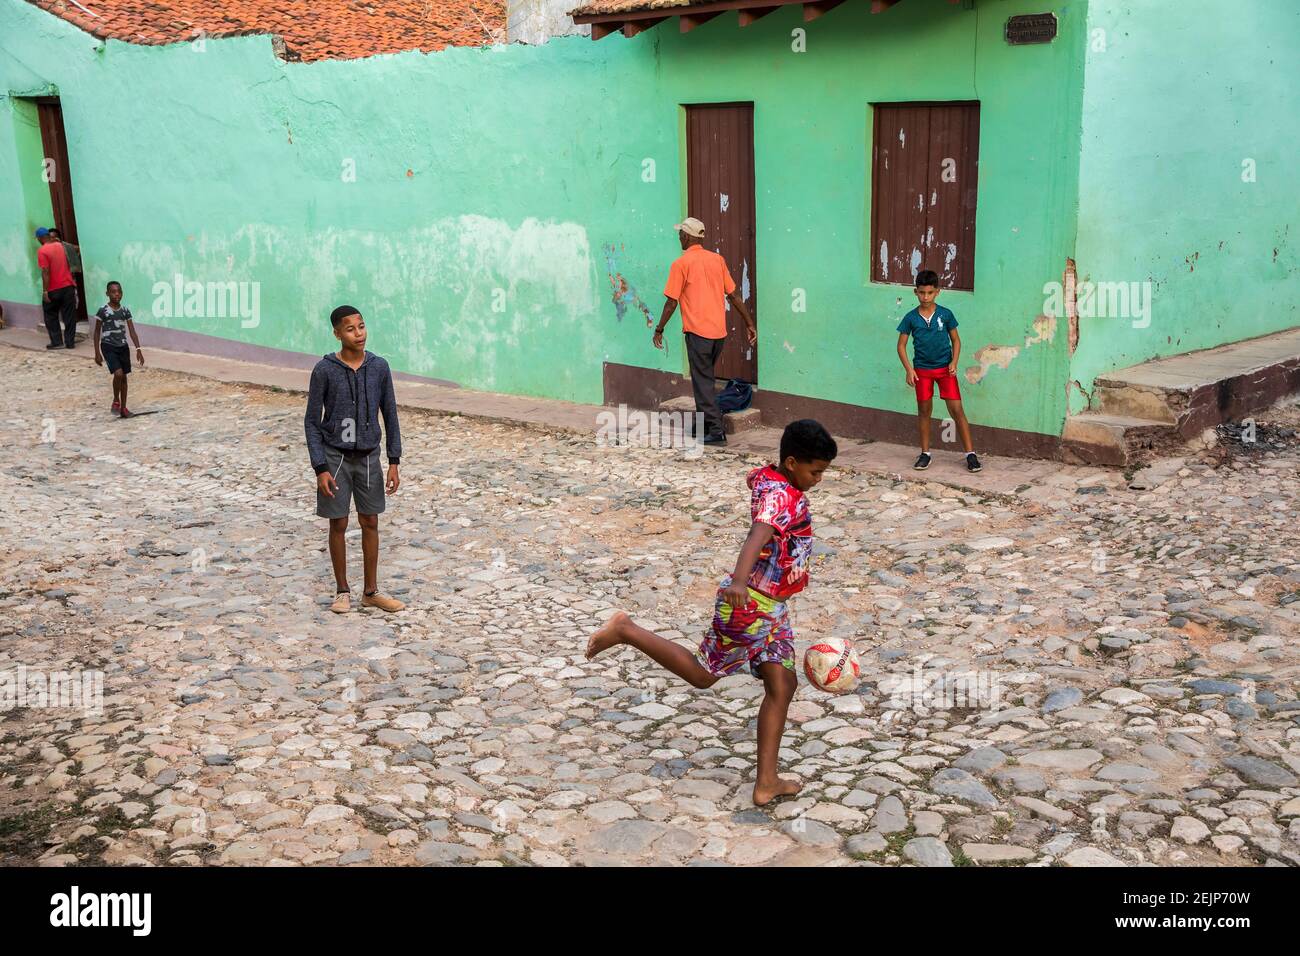 Kinder spielen Fußball auf einer gepflasterten Straße in Trinidad, Kuba Stockfoto